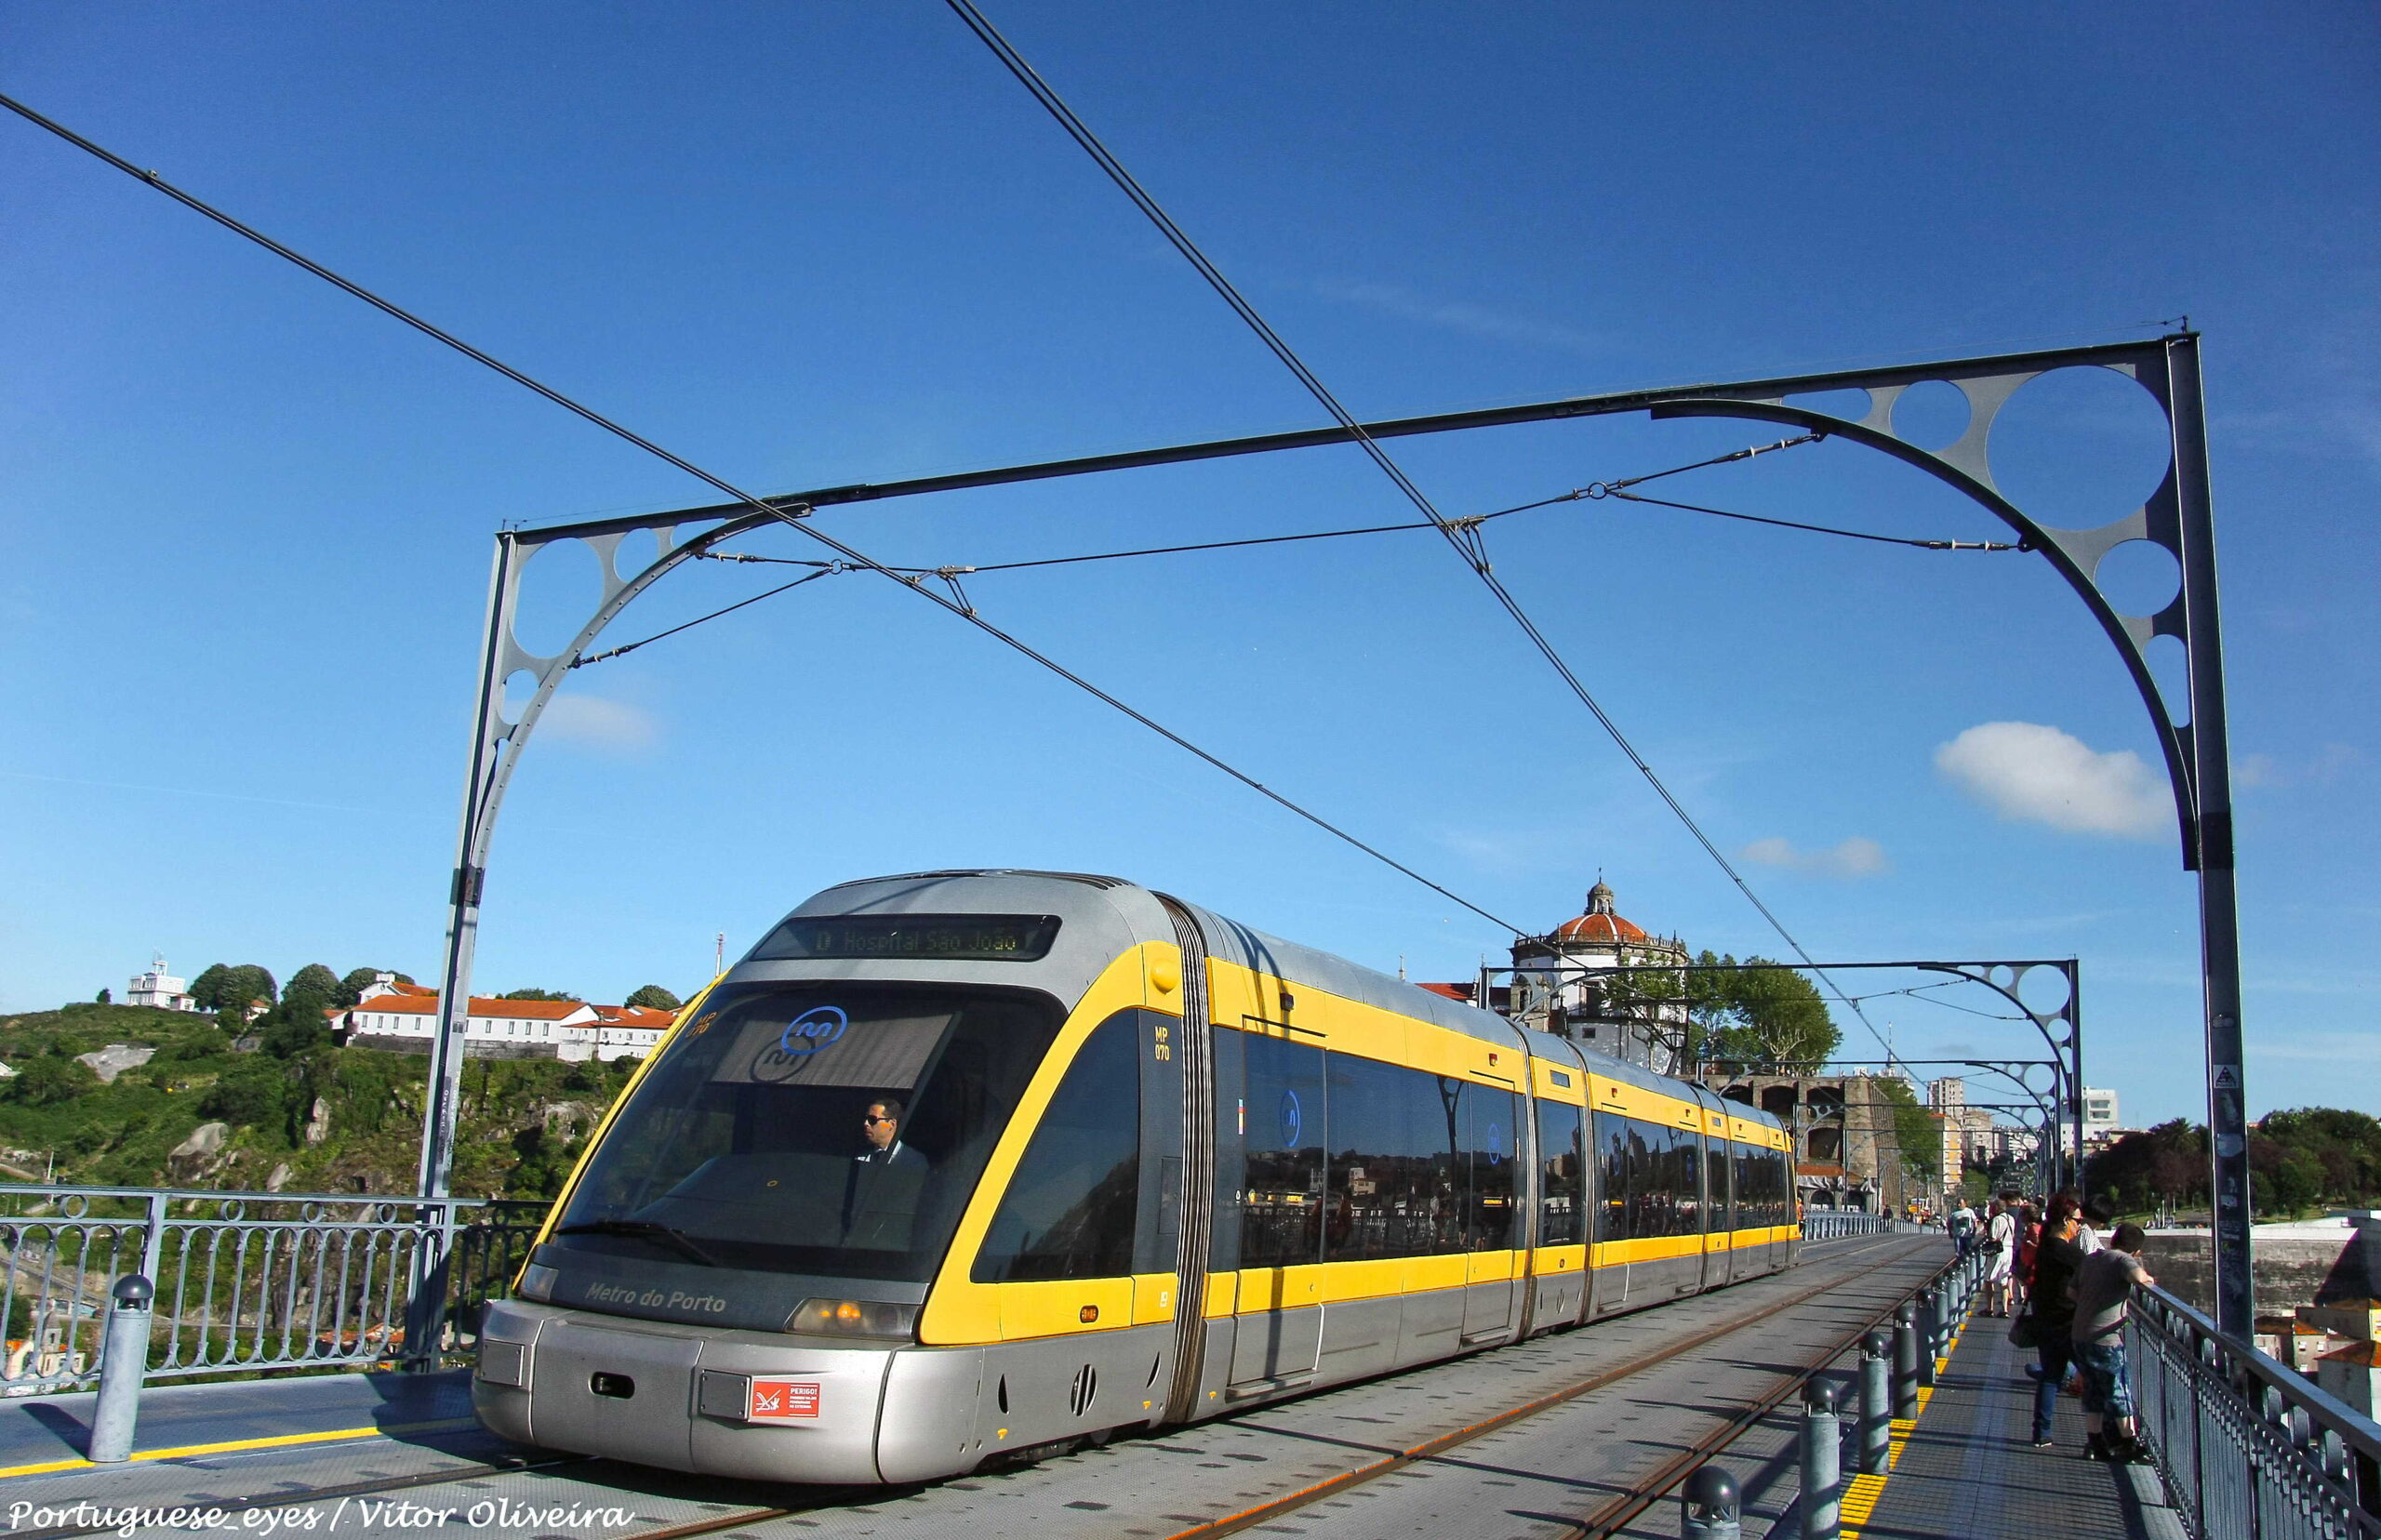 Como funciona o transporte público em Portugal?